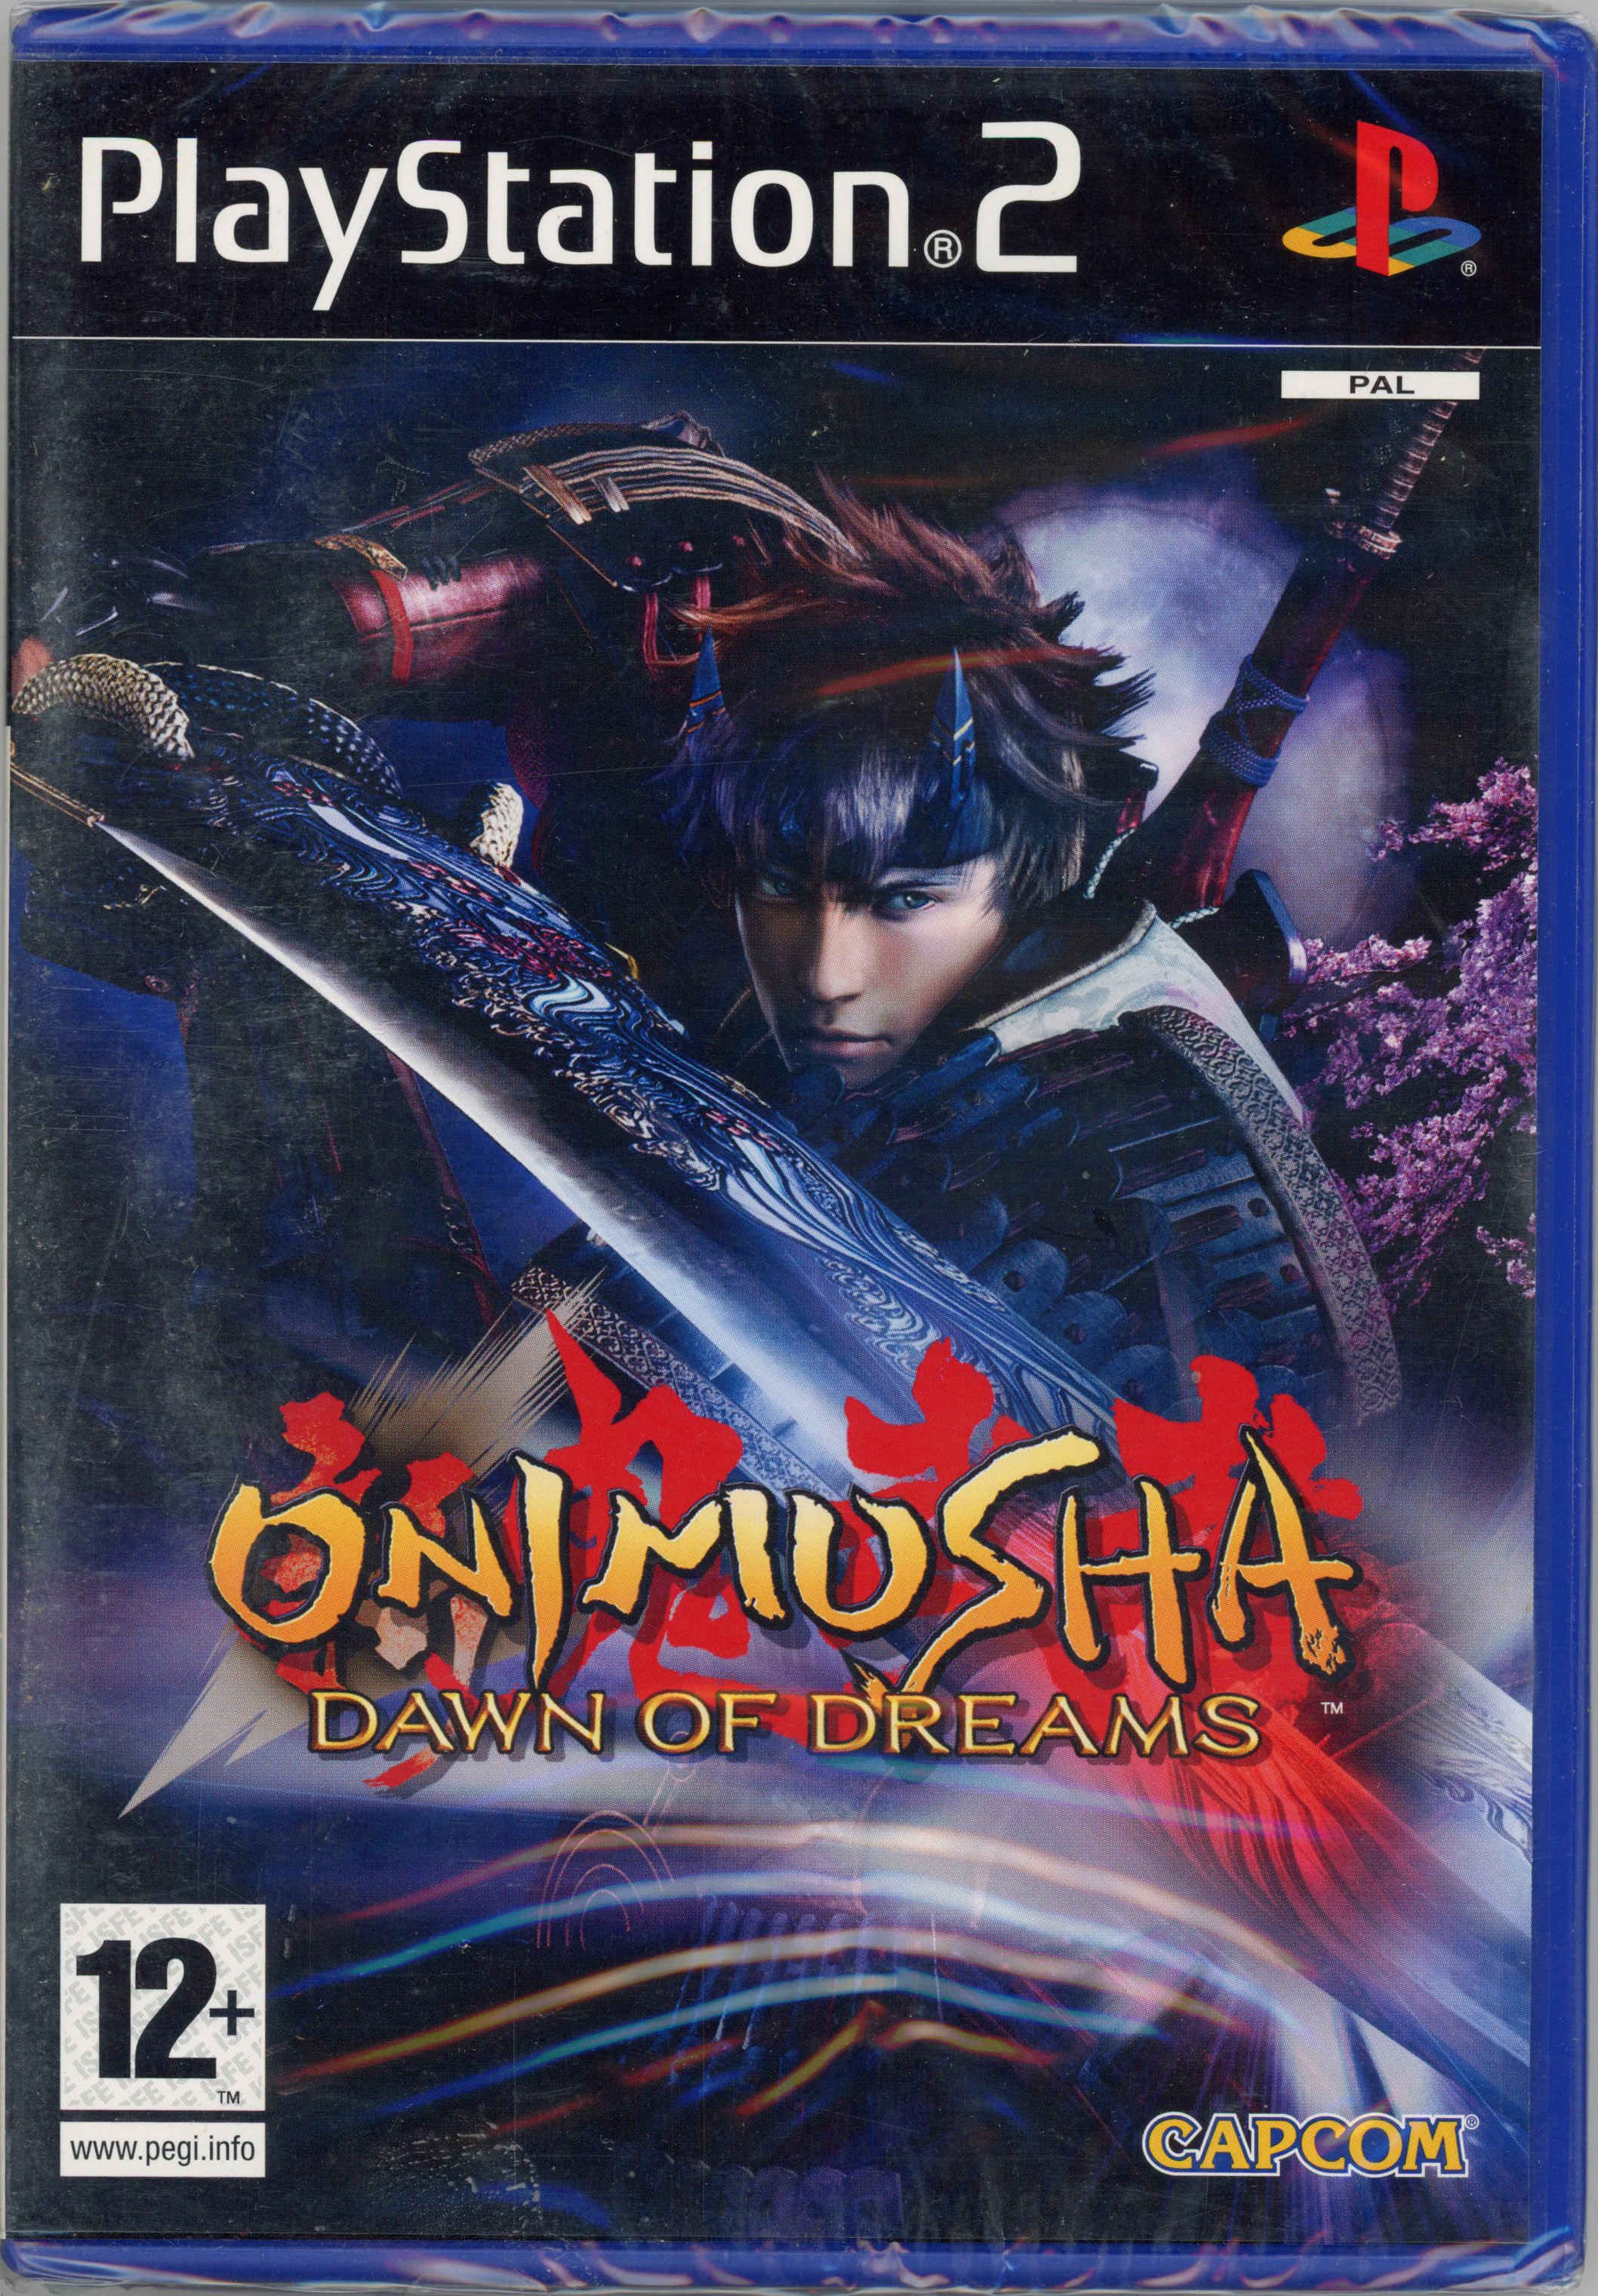 Sony - Onimusha Dawn of Dreams - PlayStation 2 - Factory Sealed